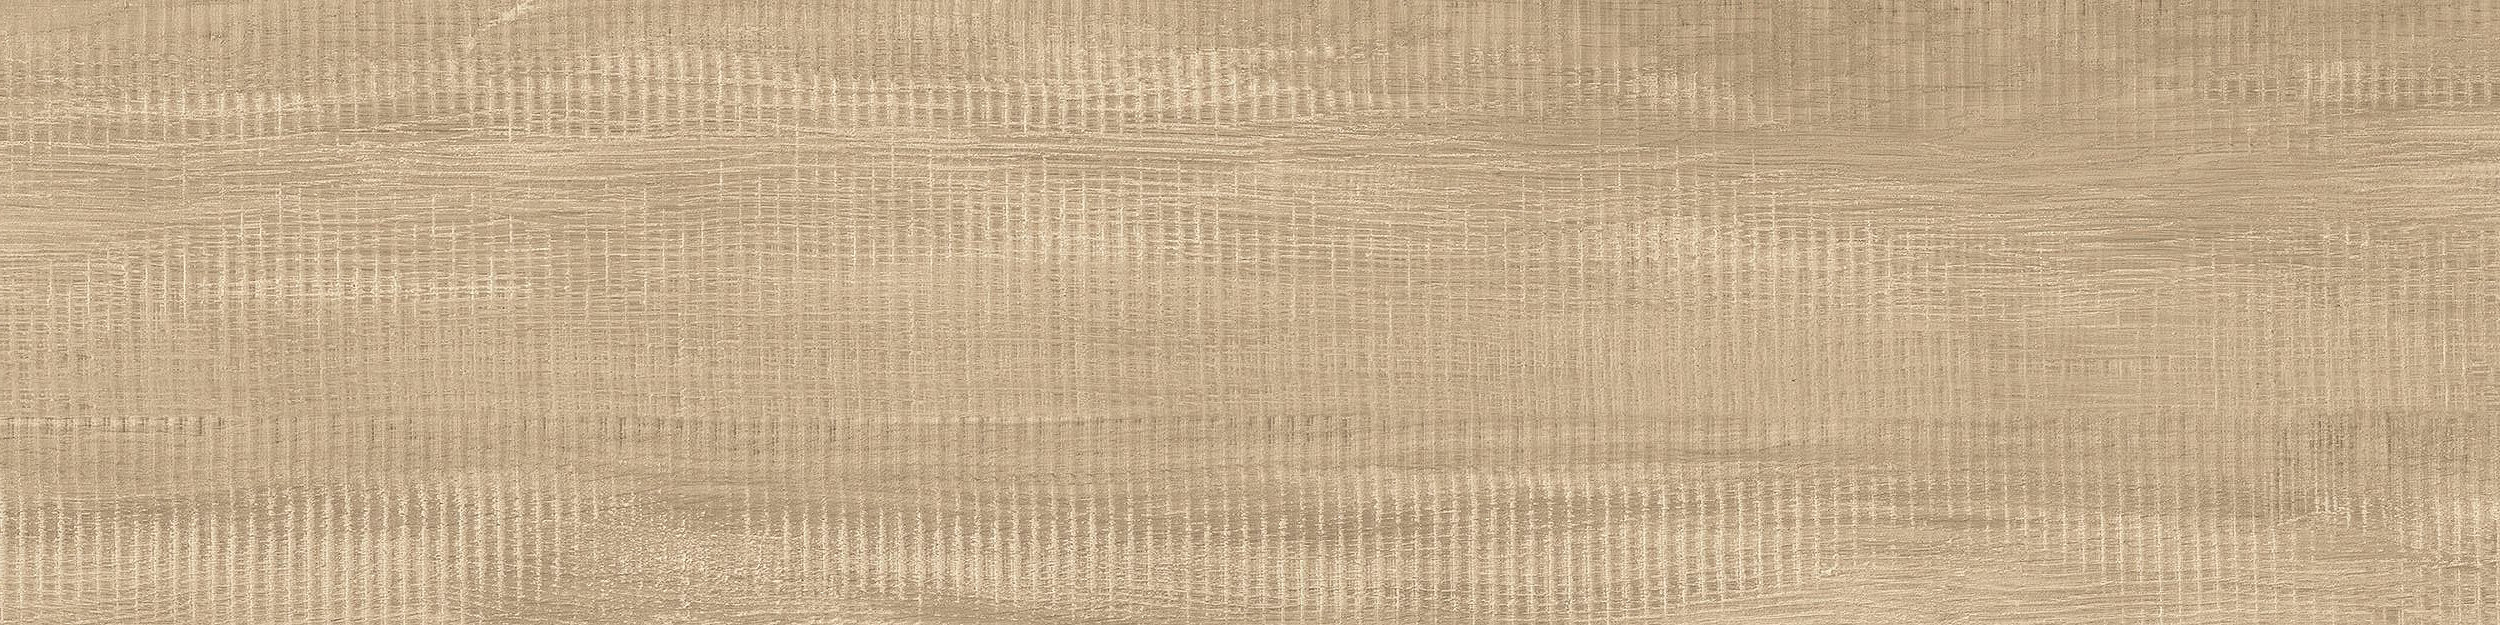 Textured Woodgrains LVT In Rustic Cashew imagen número 1